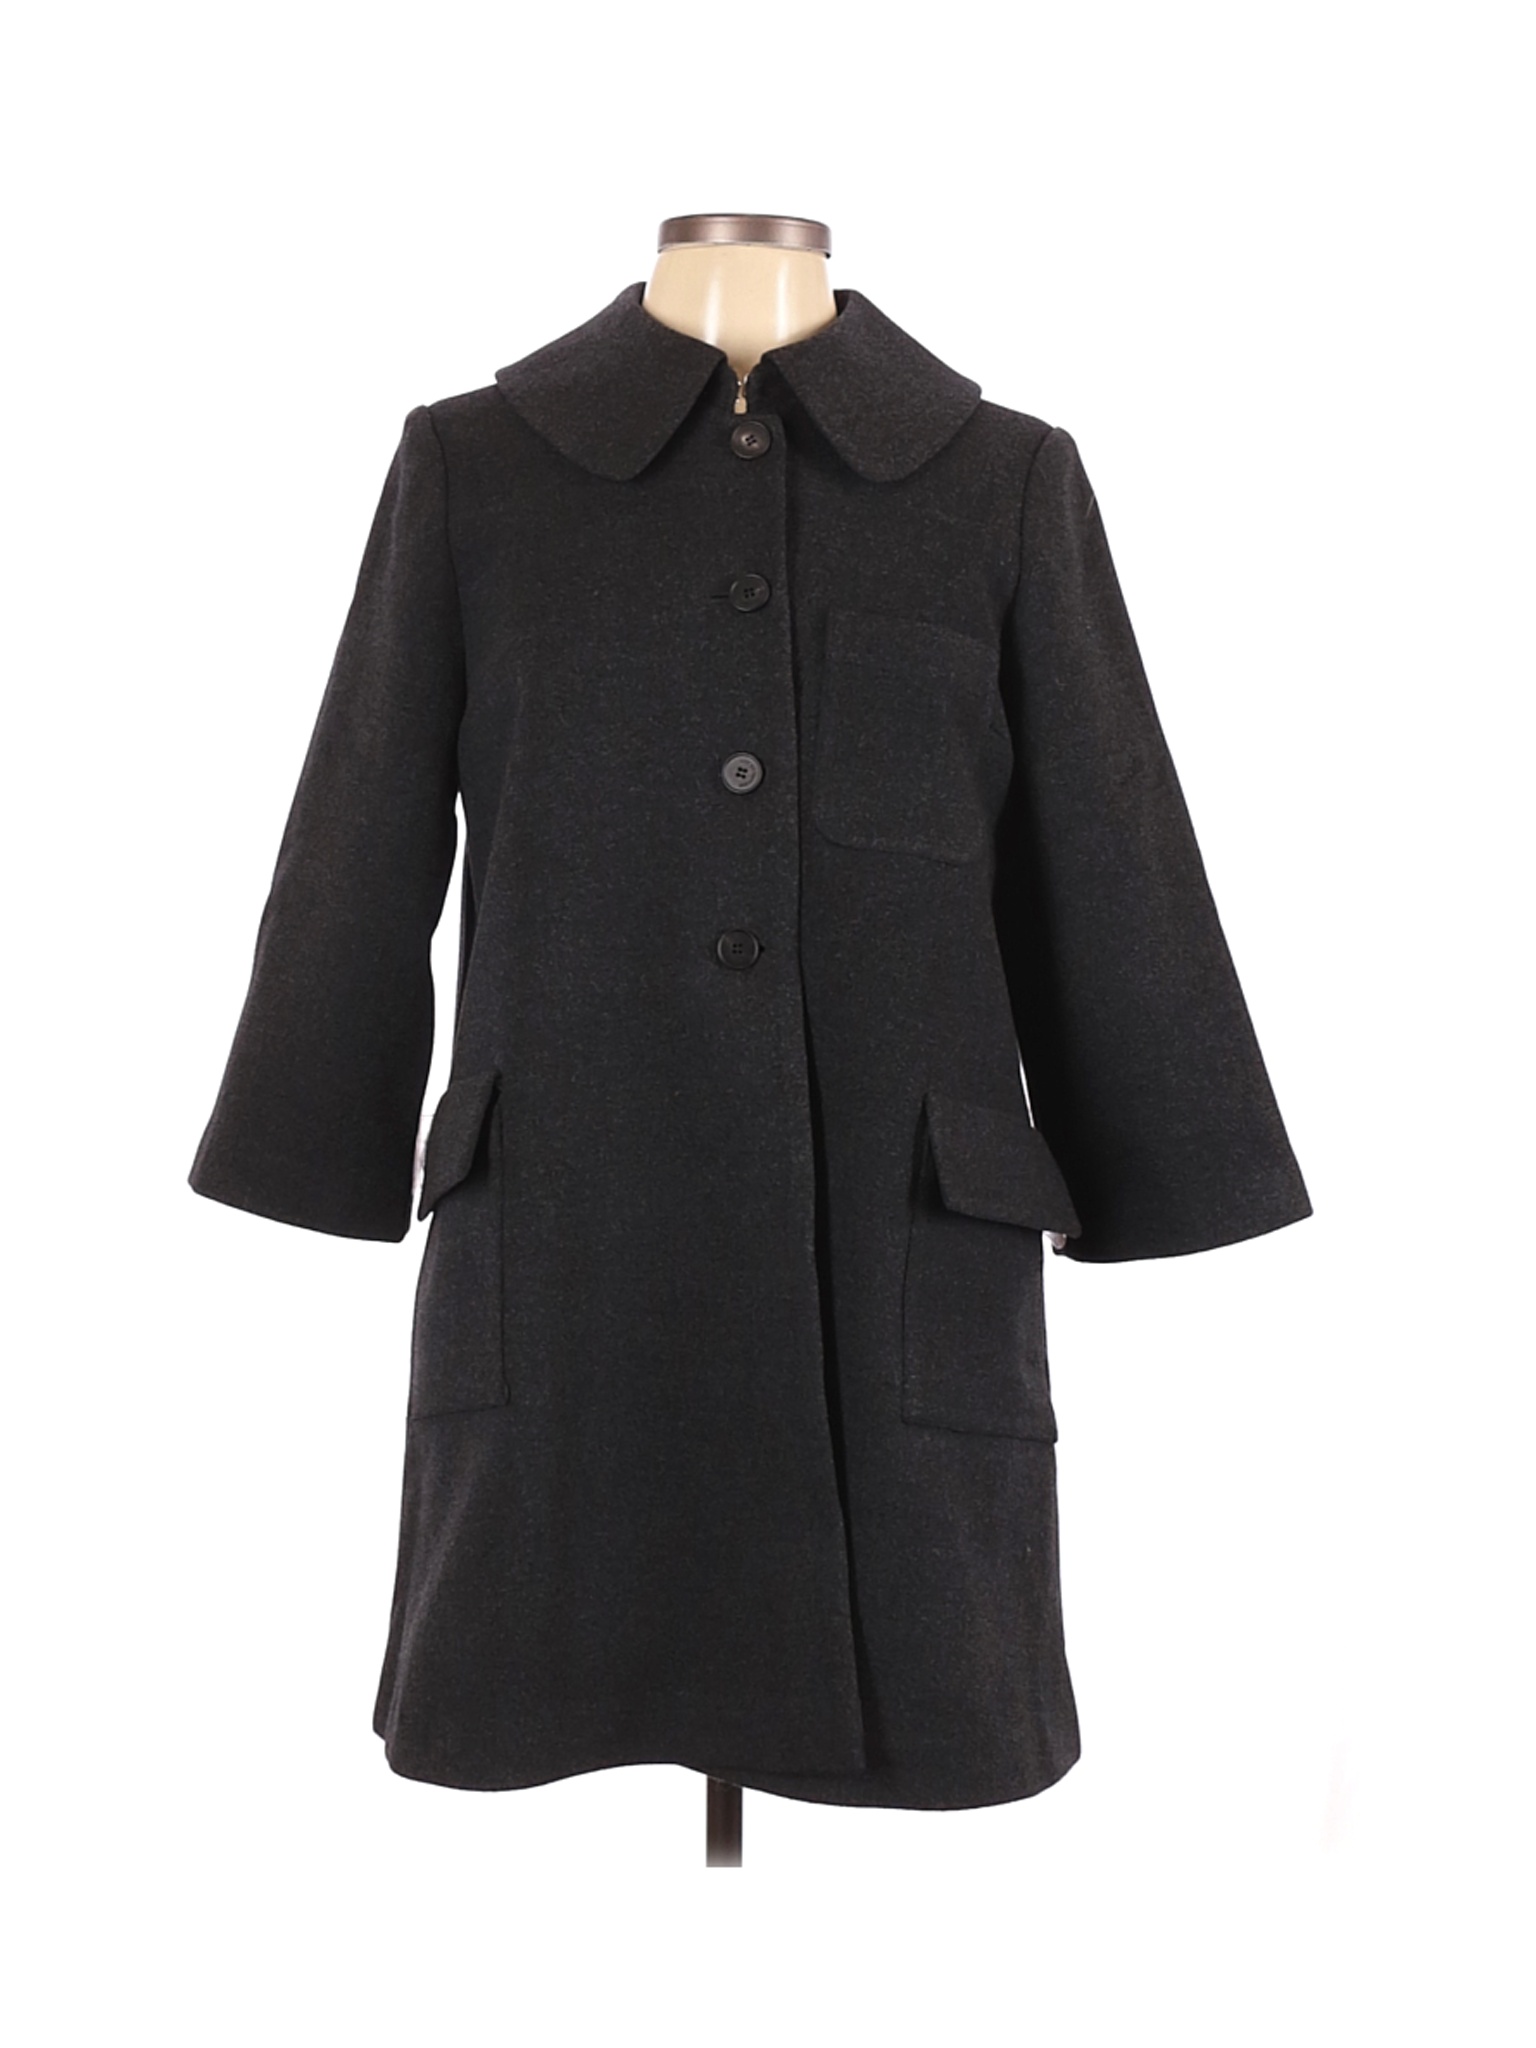 Morgane Le Fay Solid Black Gray Coat Size L - 84% off | thredUP